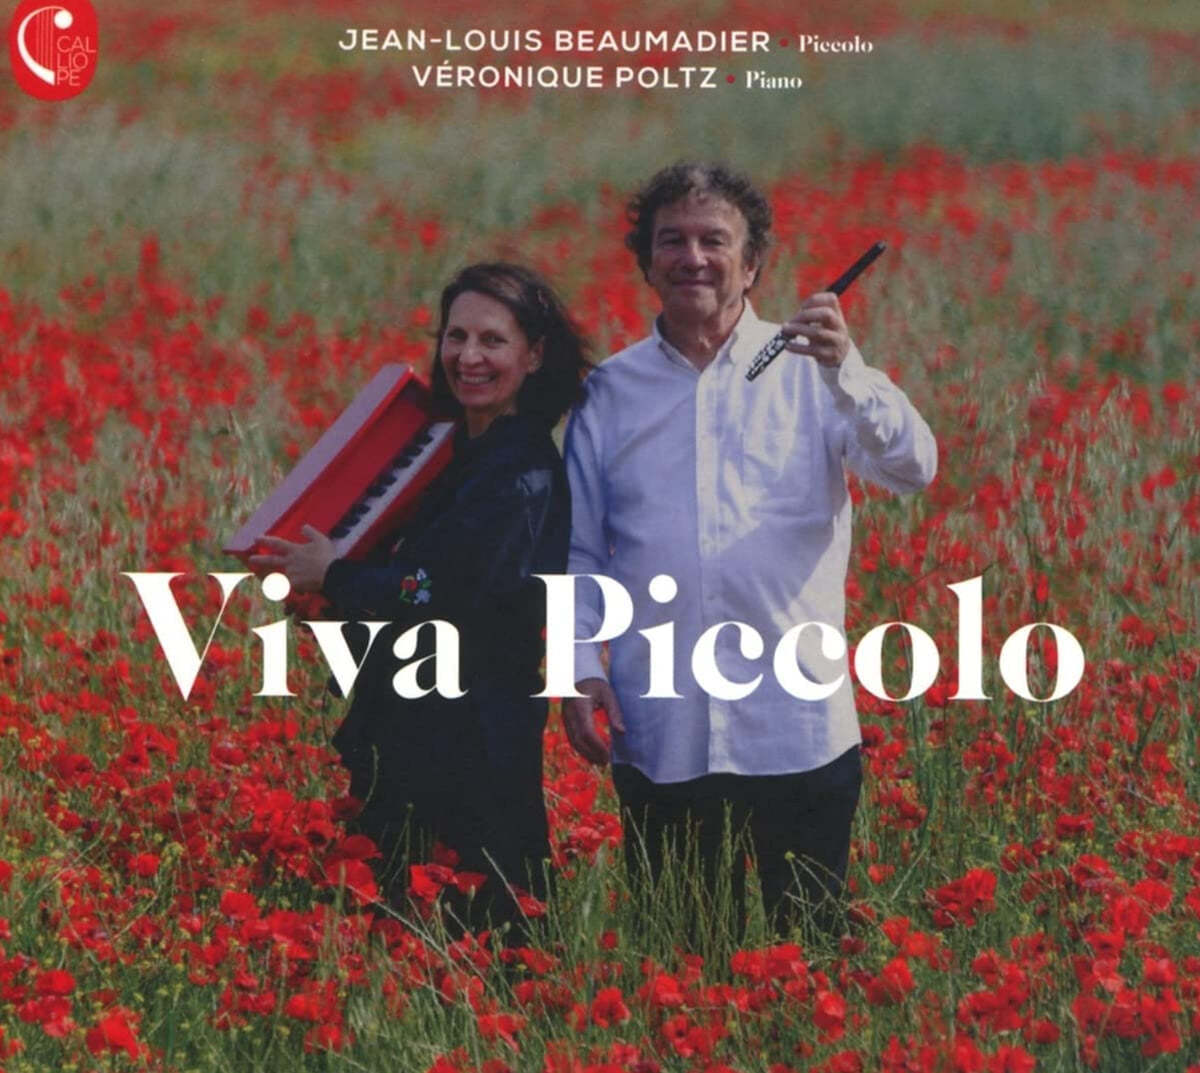 Jean-Louis Beaumadier 피콜로 연주집 - 바흐: 플루트 소나타 / 브람스: 헝가리 무곡 / 크라이슬러: 사랑의 슬픔 (Viva Piccolo)